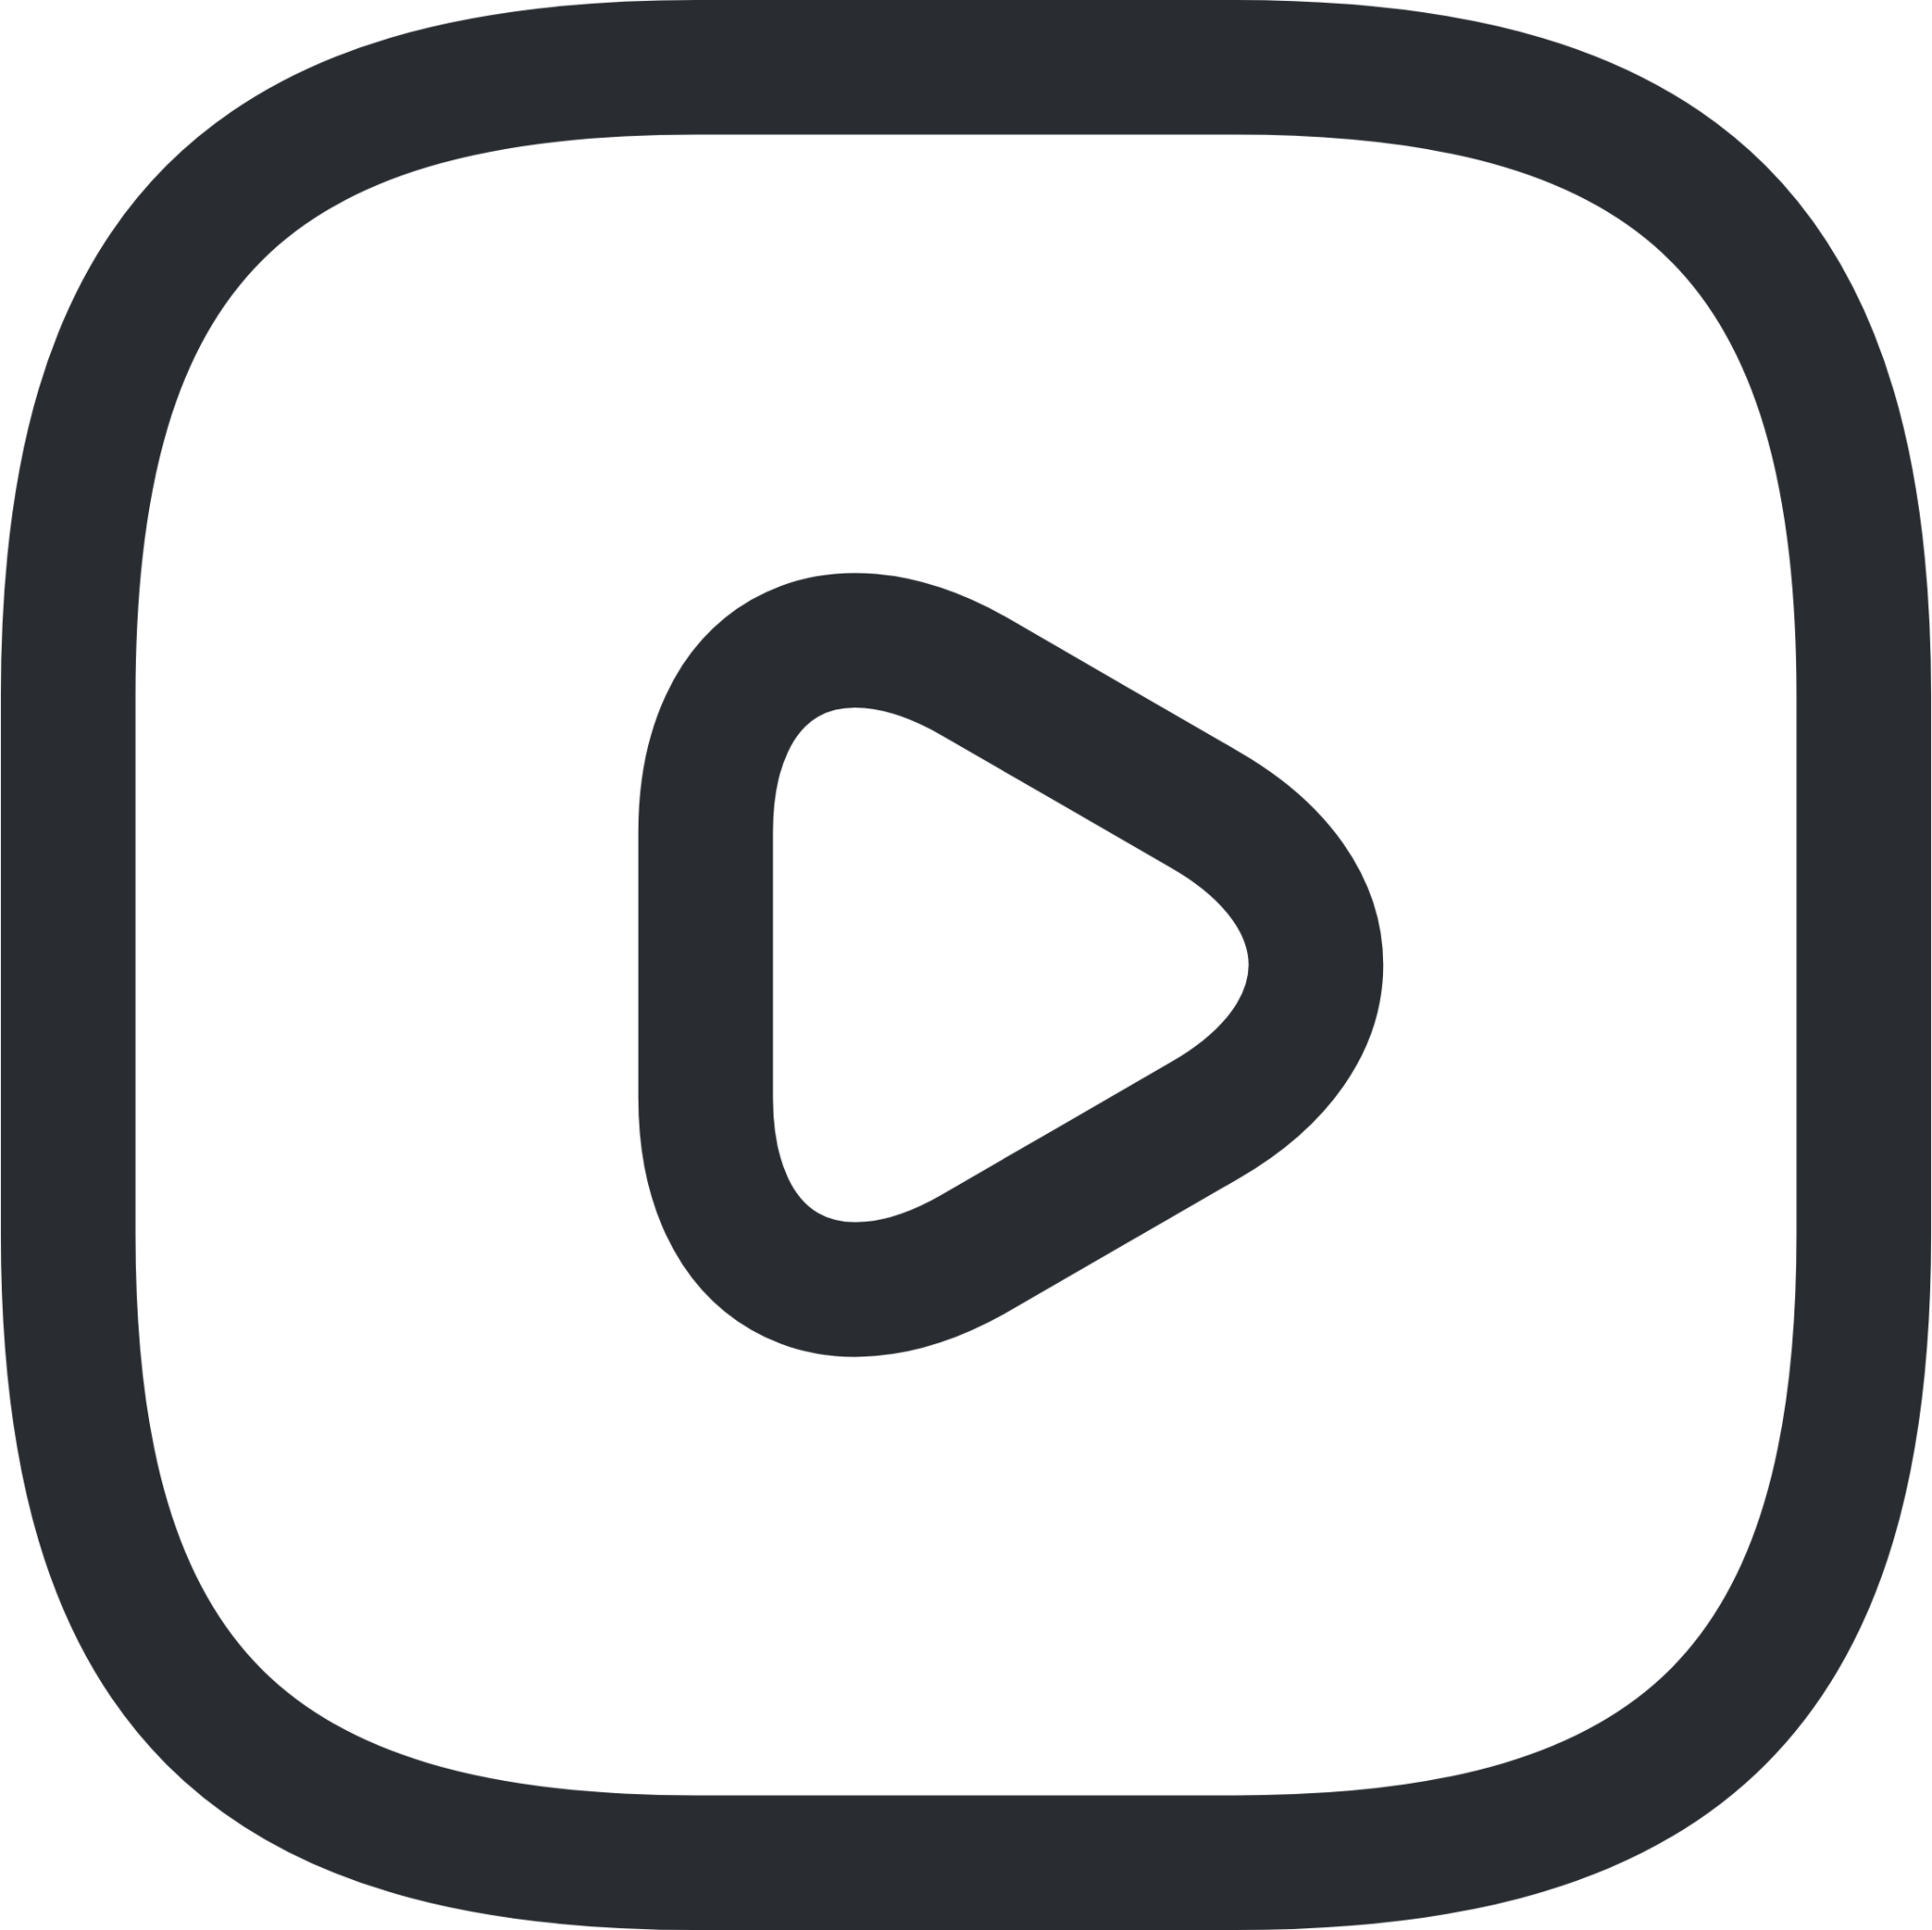 video square icon